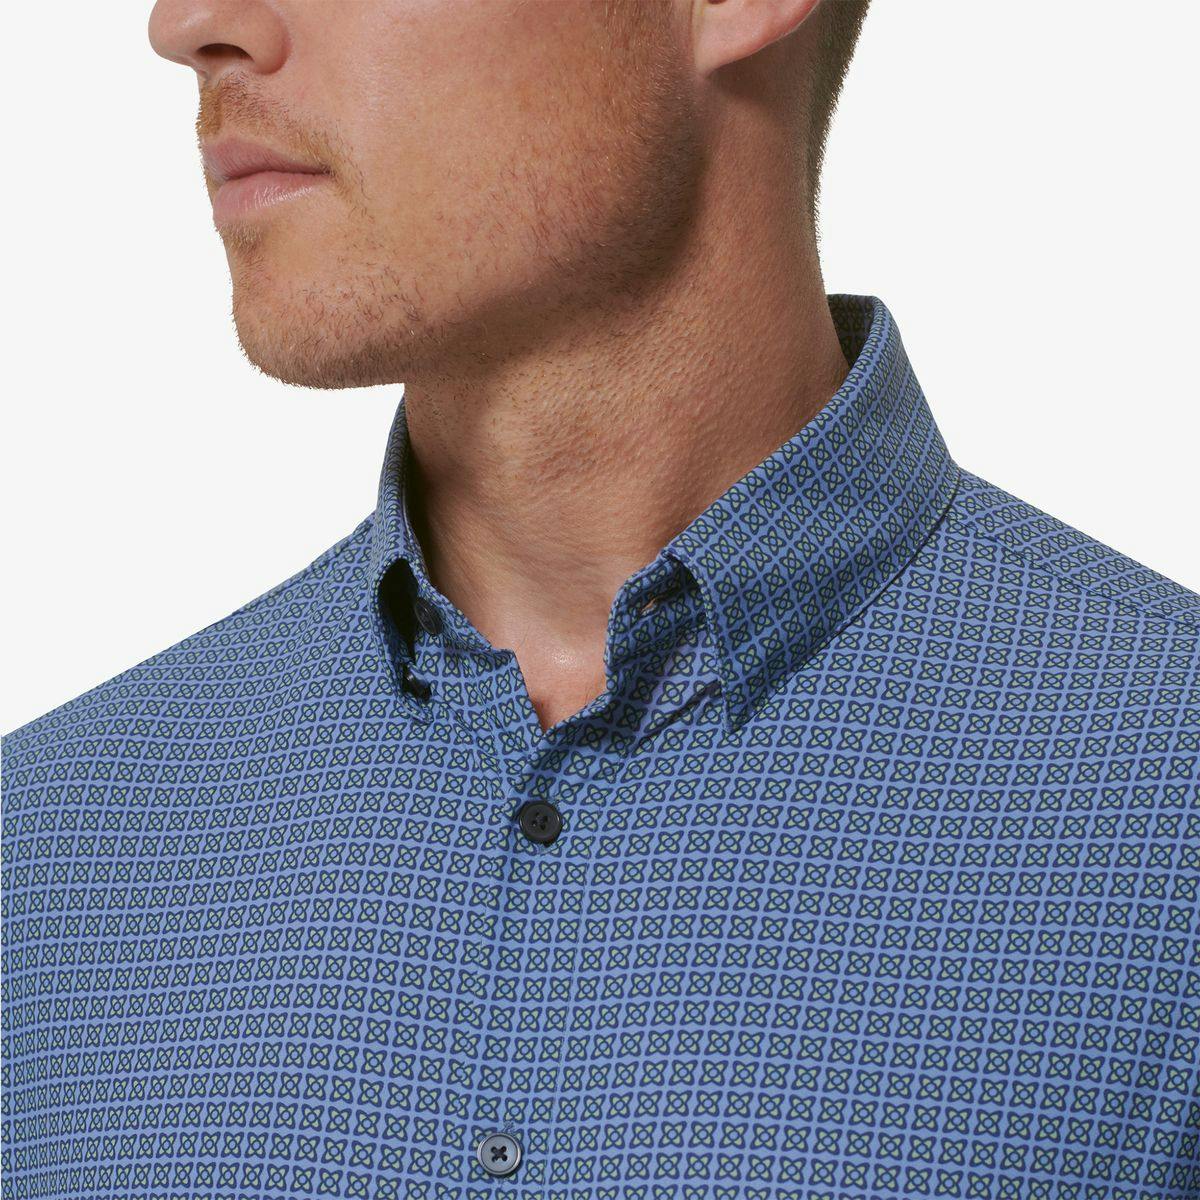 Monaco Dress Shirt - Product Image 5